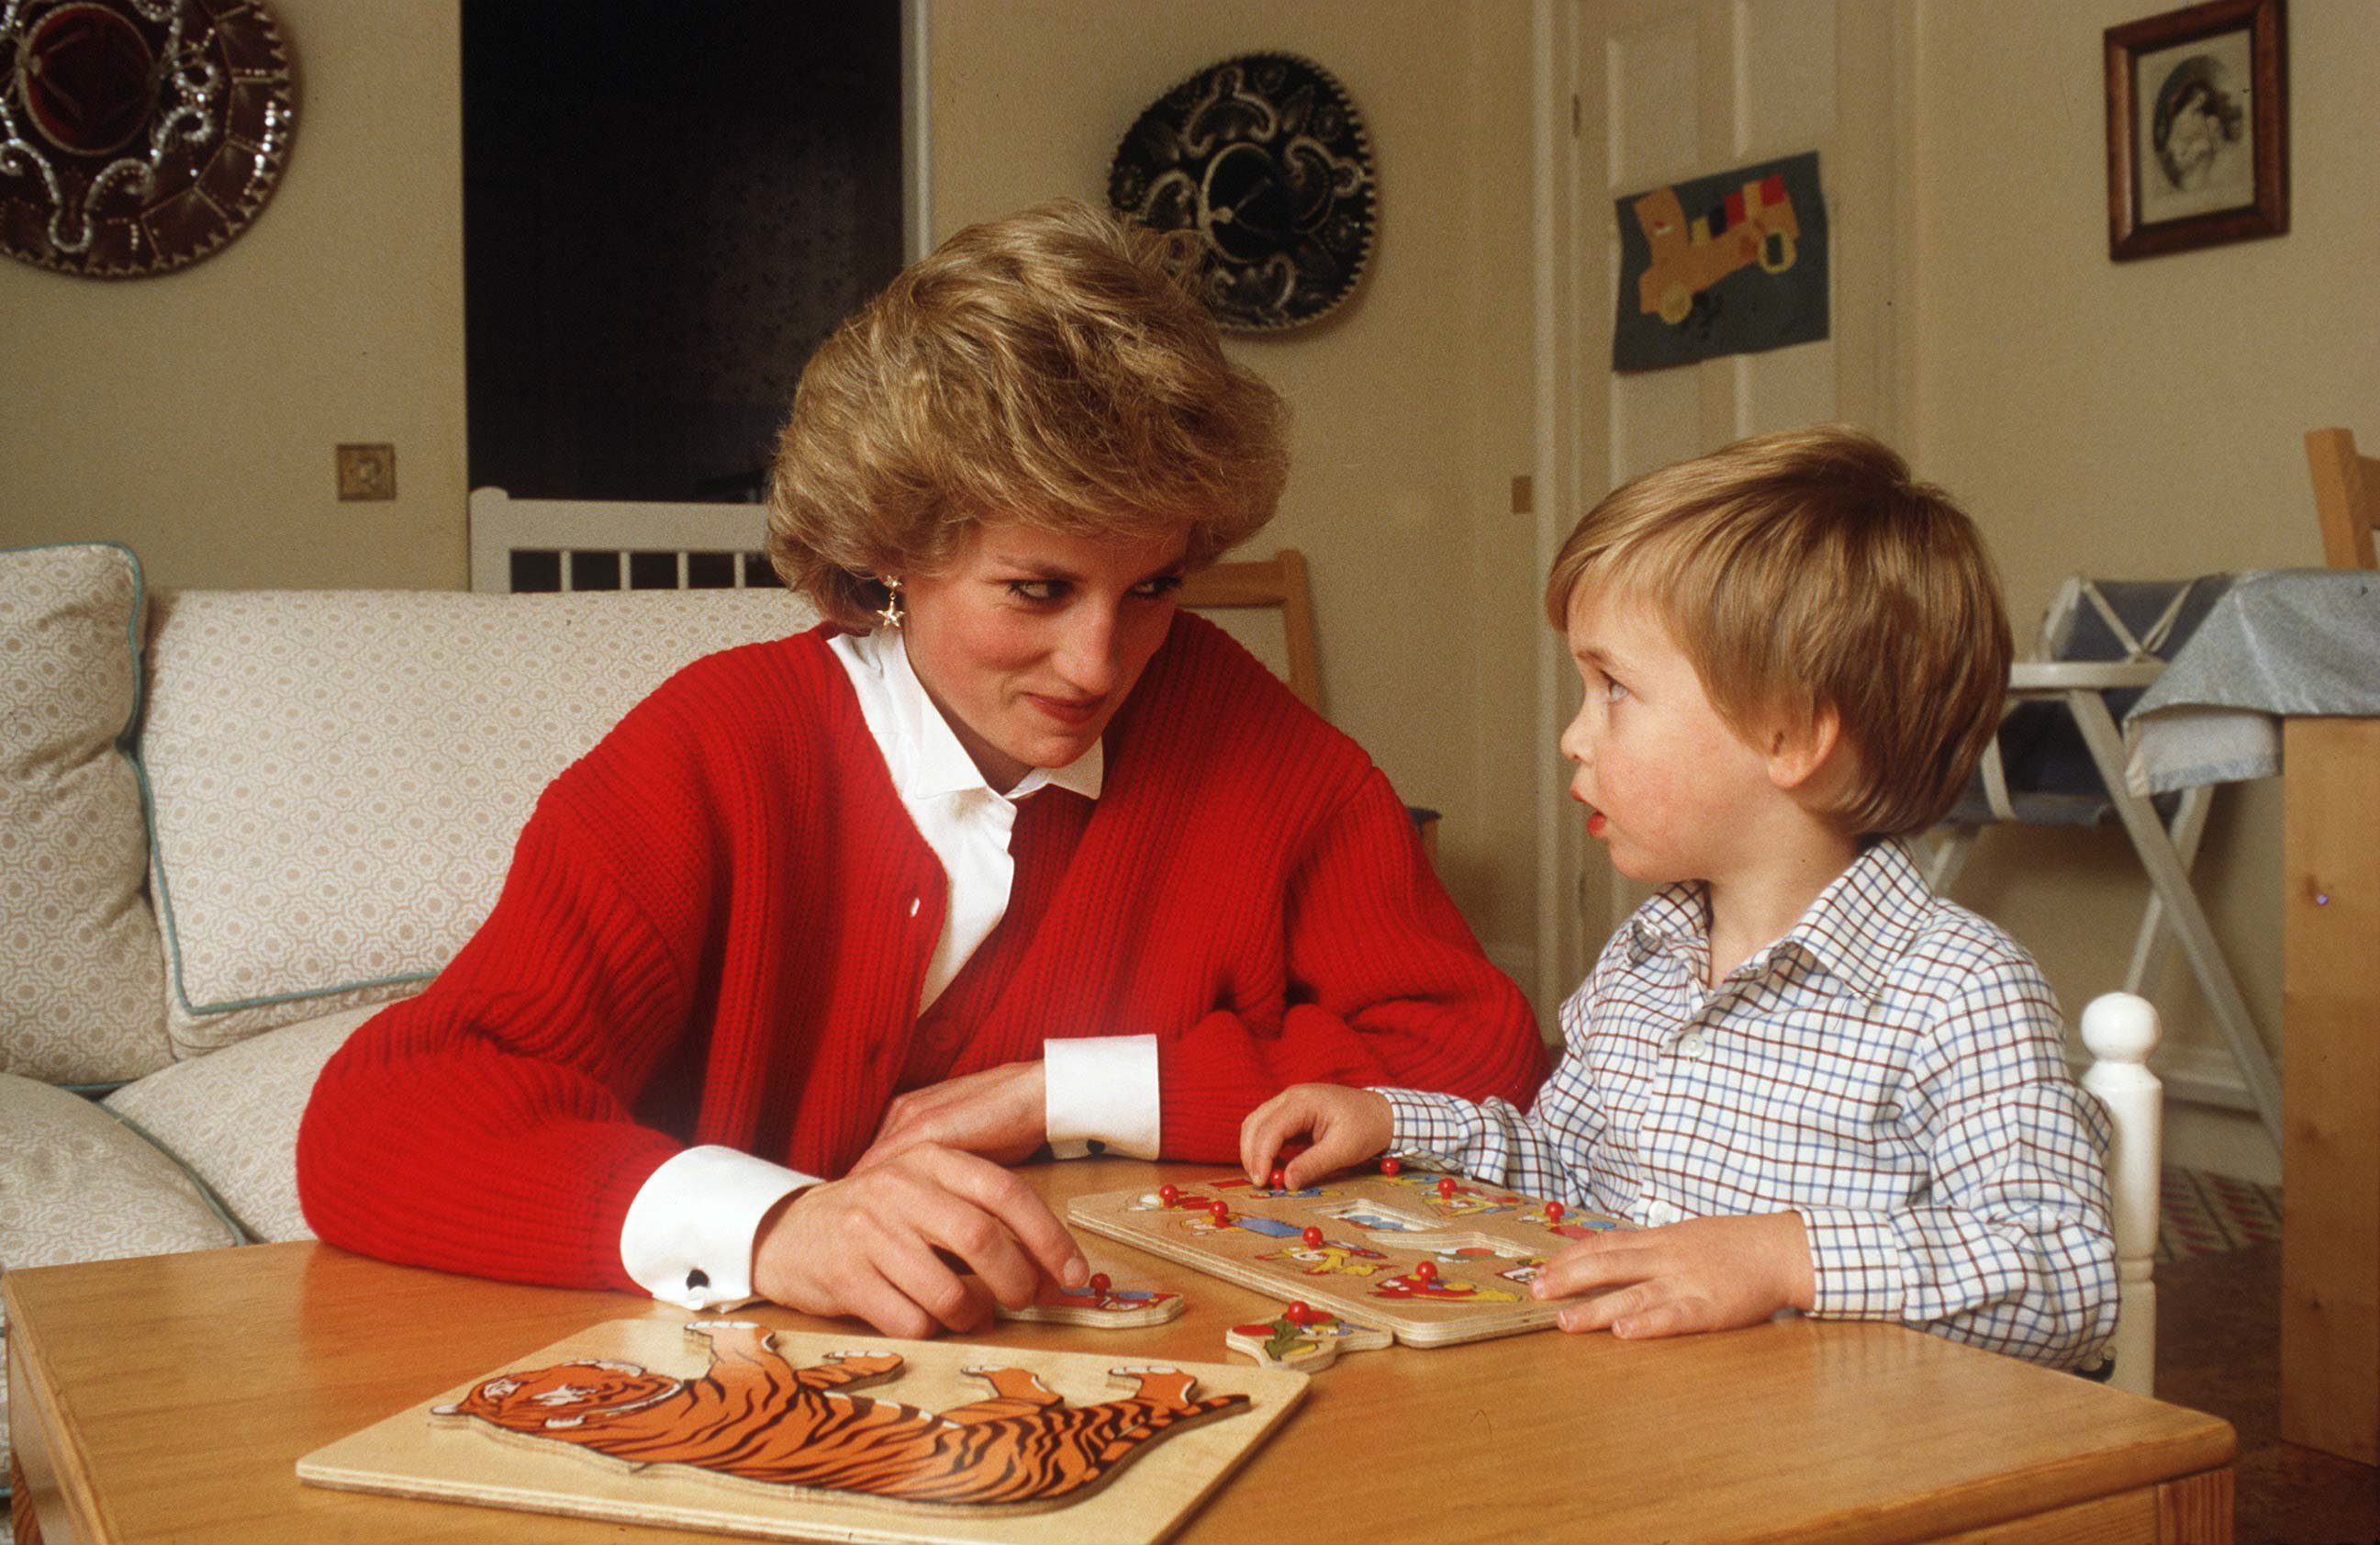 La princesa Diana ayudando al príncipe William con un rompecabezas en su sala de juegos en el Palacio de Kensington. | Foto: Getty Images